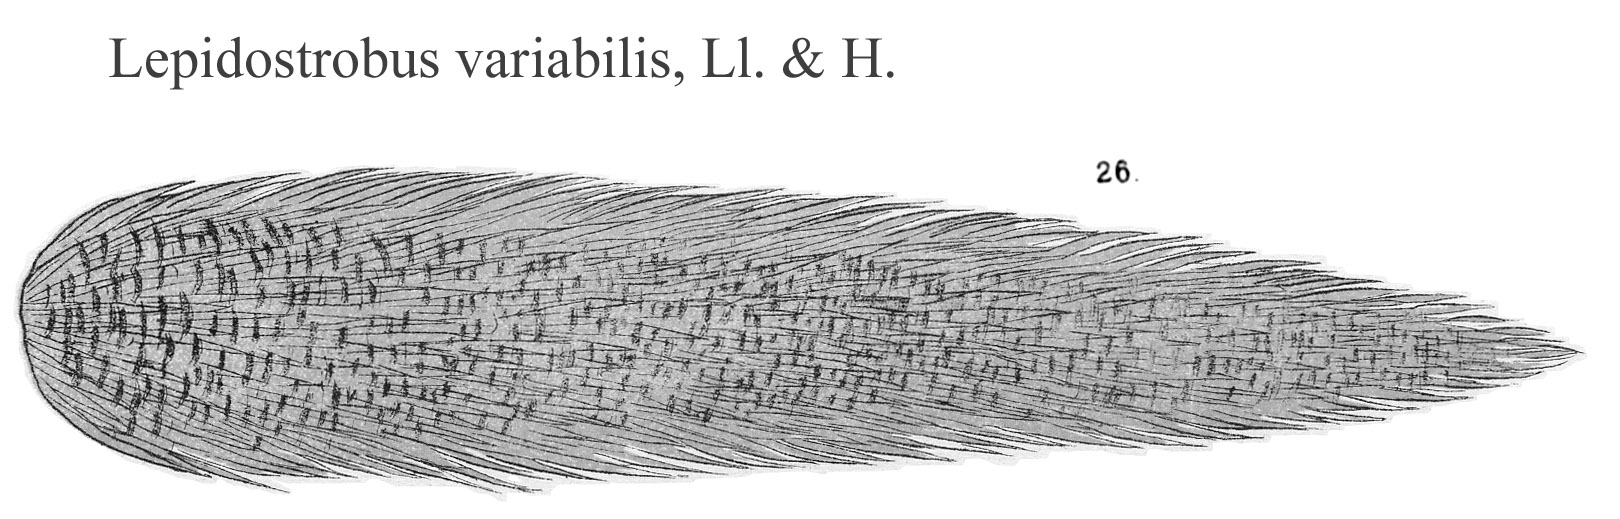 Lepidostrobus variabilis, Plate LXIX